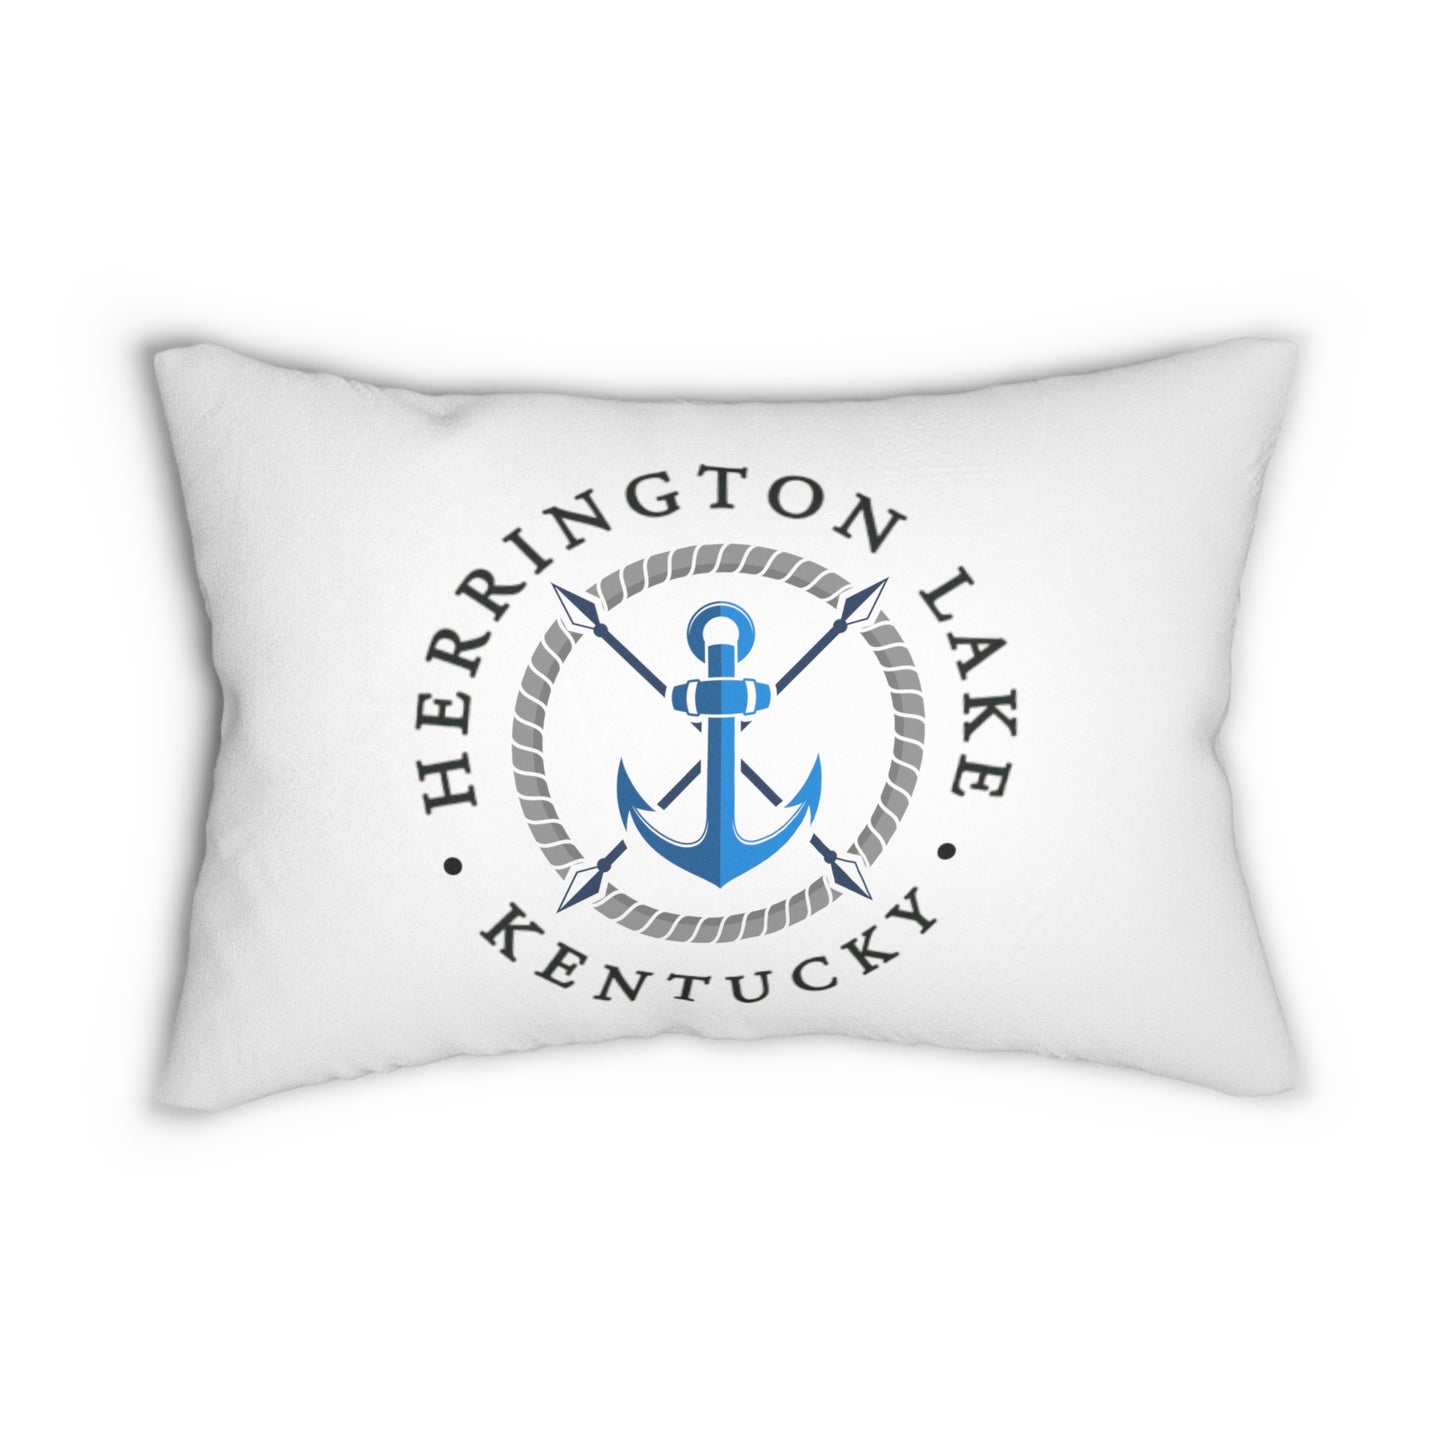 Herrington Lake Anchor Lumbar Pillow (White)